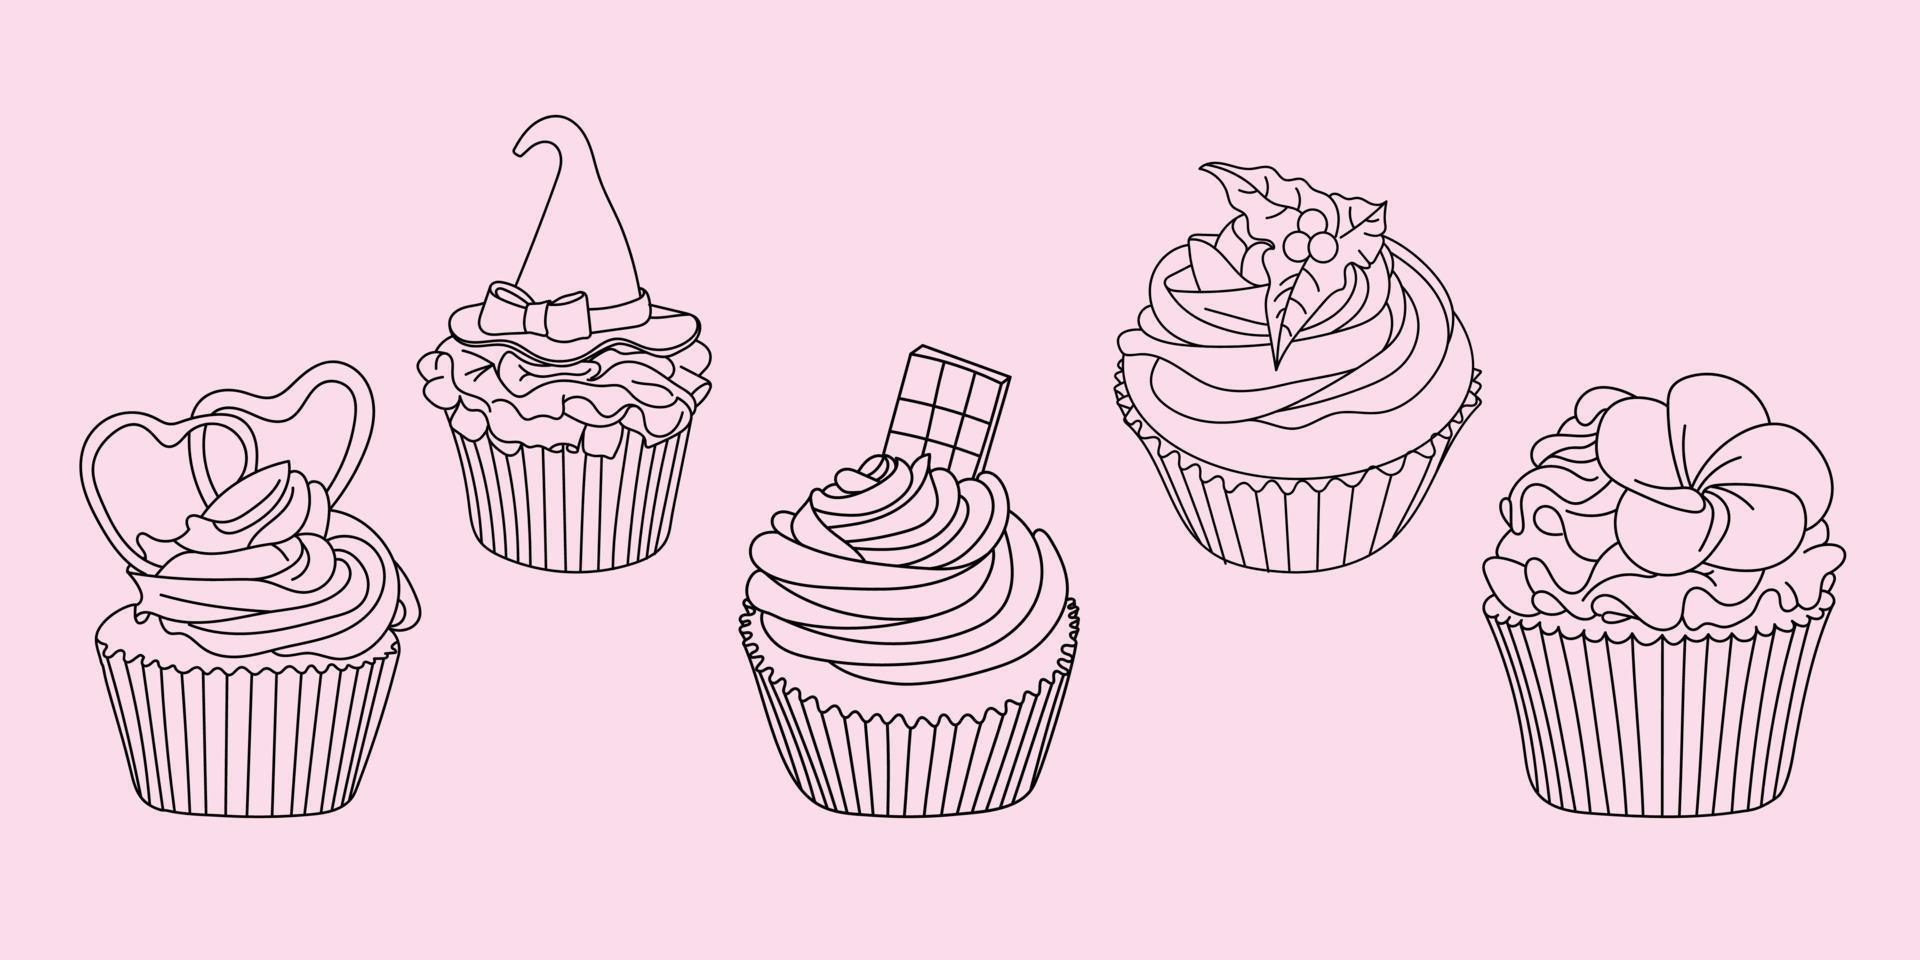 Cupcake-Vektor-Set handgezeichnete Linie Kunst-Illustrationsset, Cup-Kuchen-Umriss für Malbuch vektor